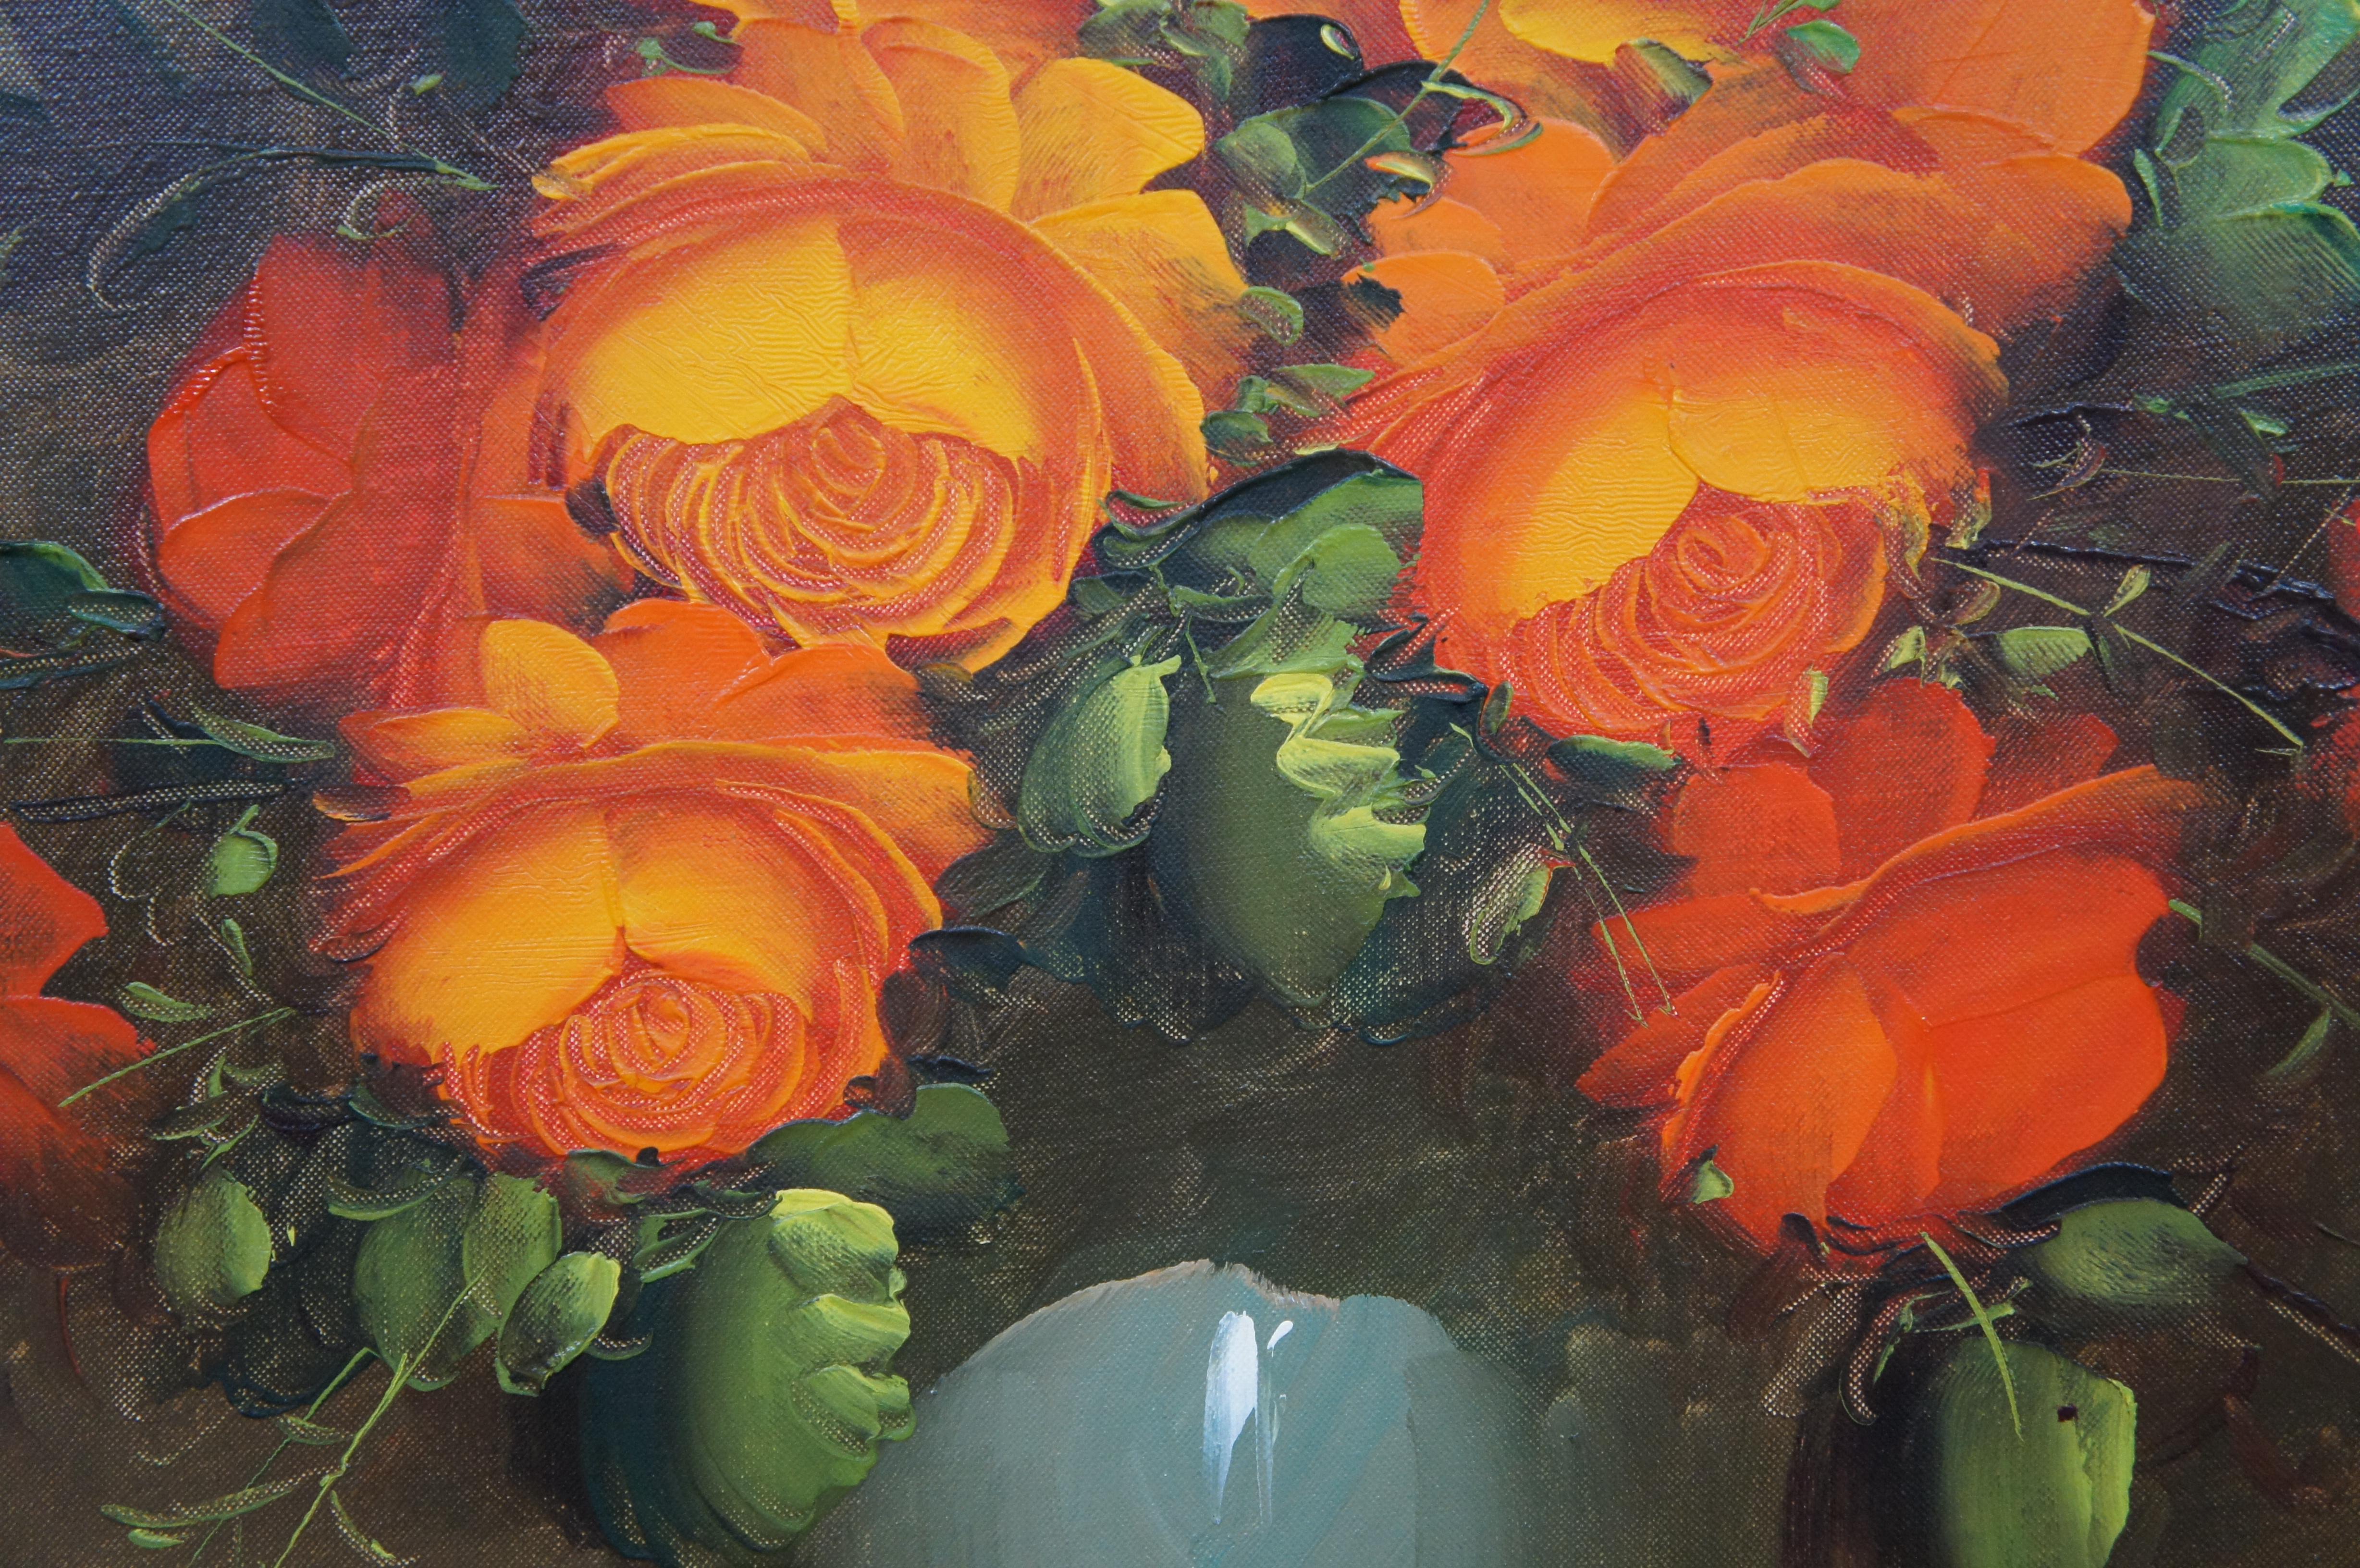 Suzanne Blumenstillleben, Ölgemälde auf Leinwand, orangefarbener Rosenstrauß, 44